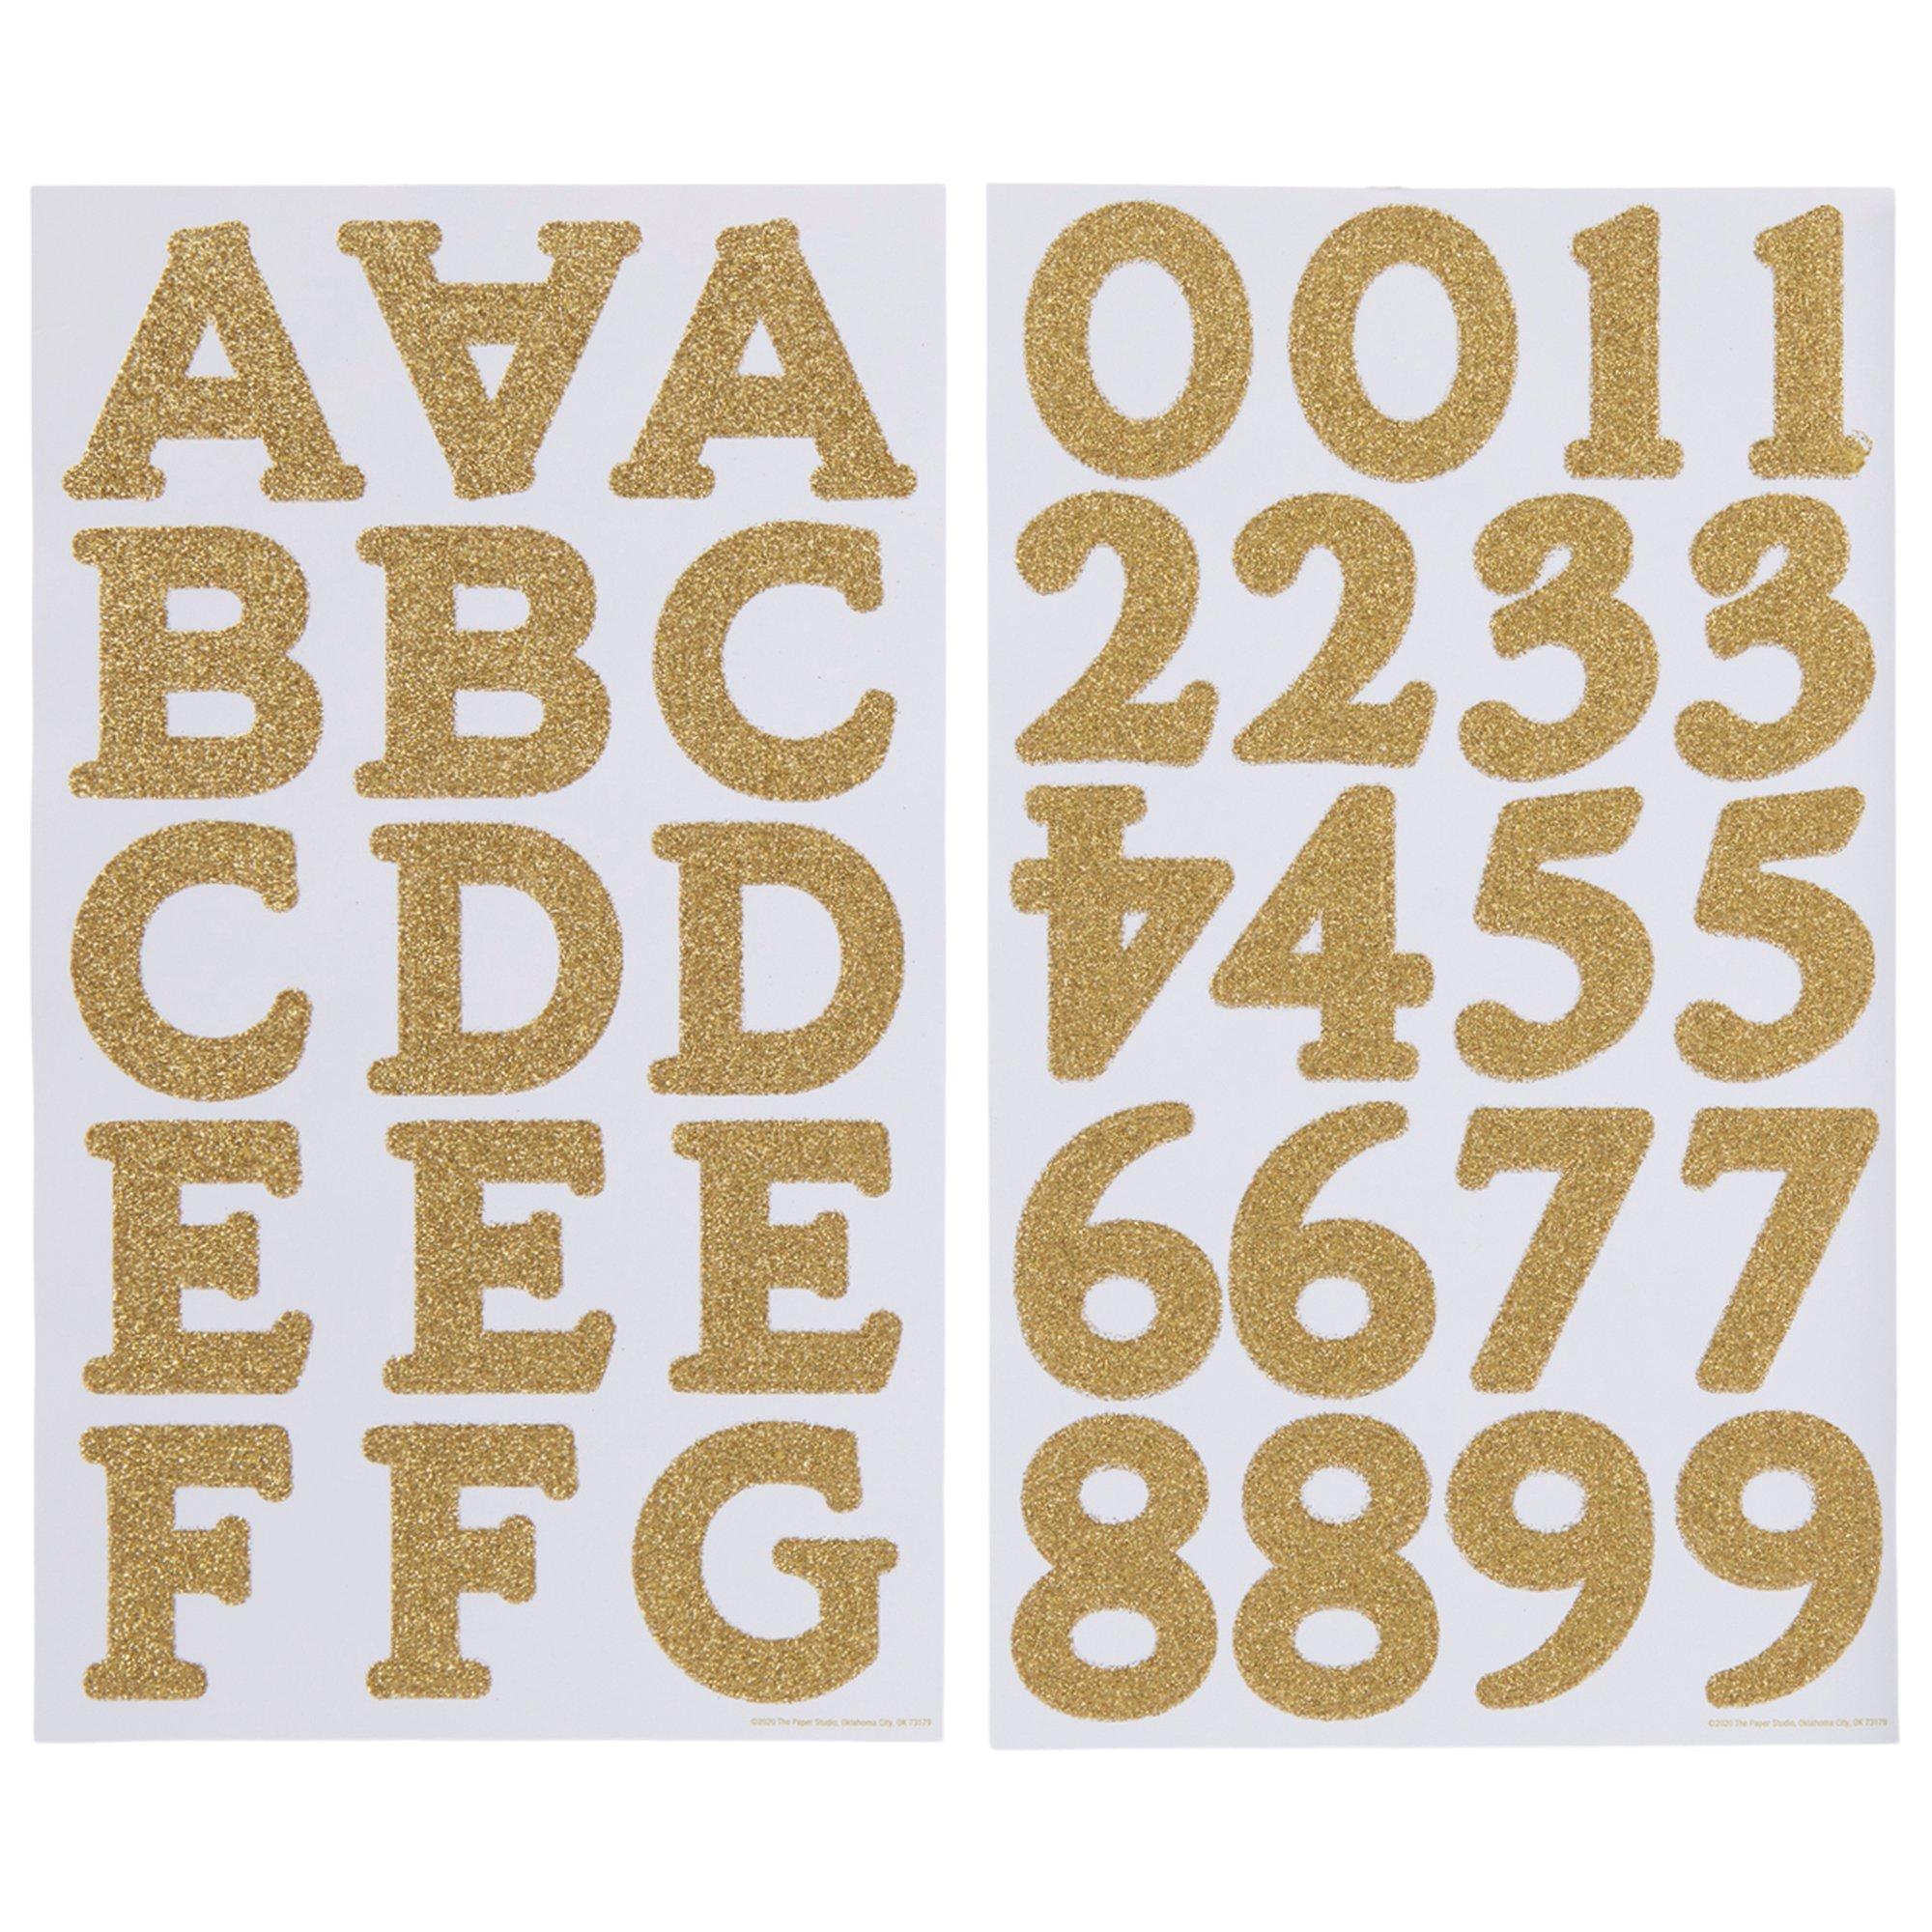 Glitter Monster Alphabet Stickers | Hobby Lobby | 2022663